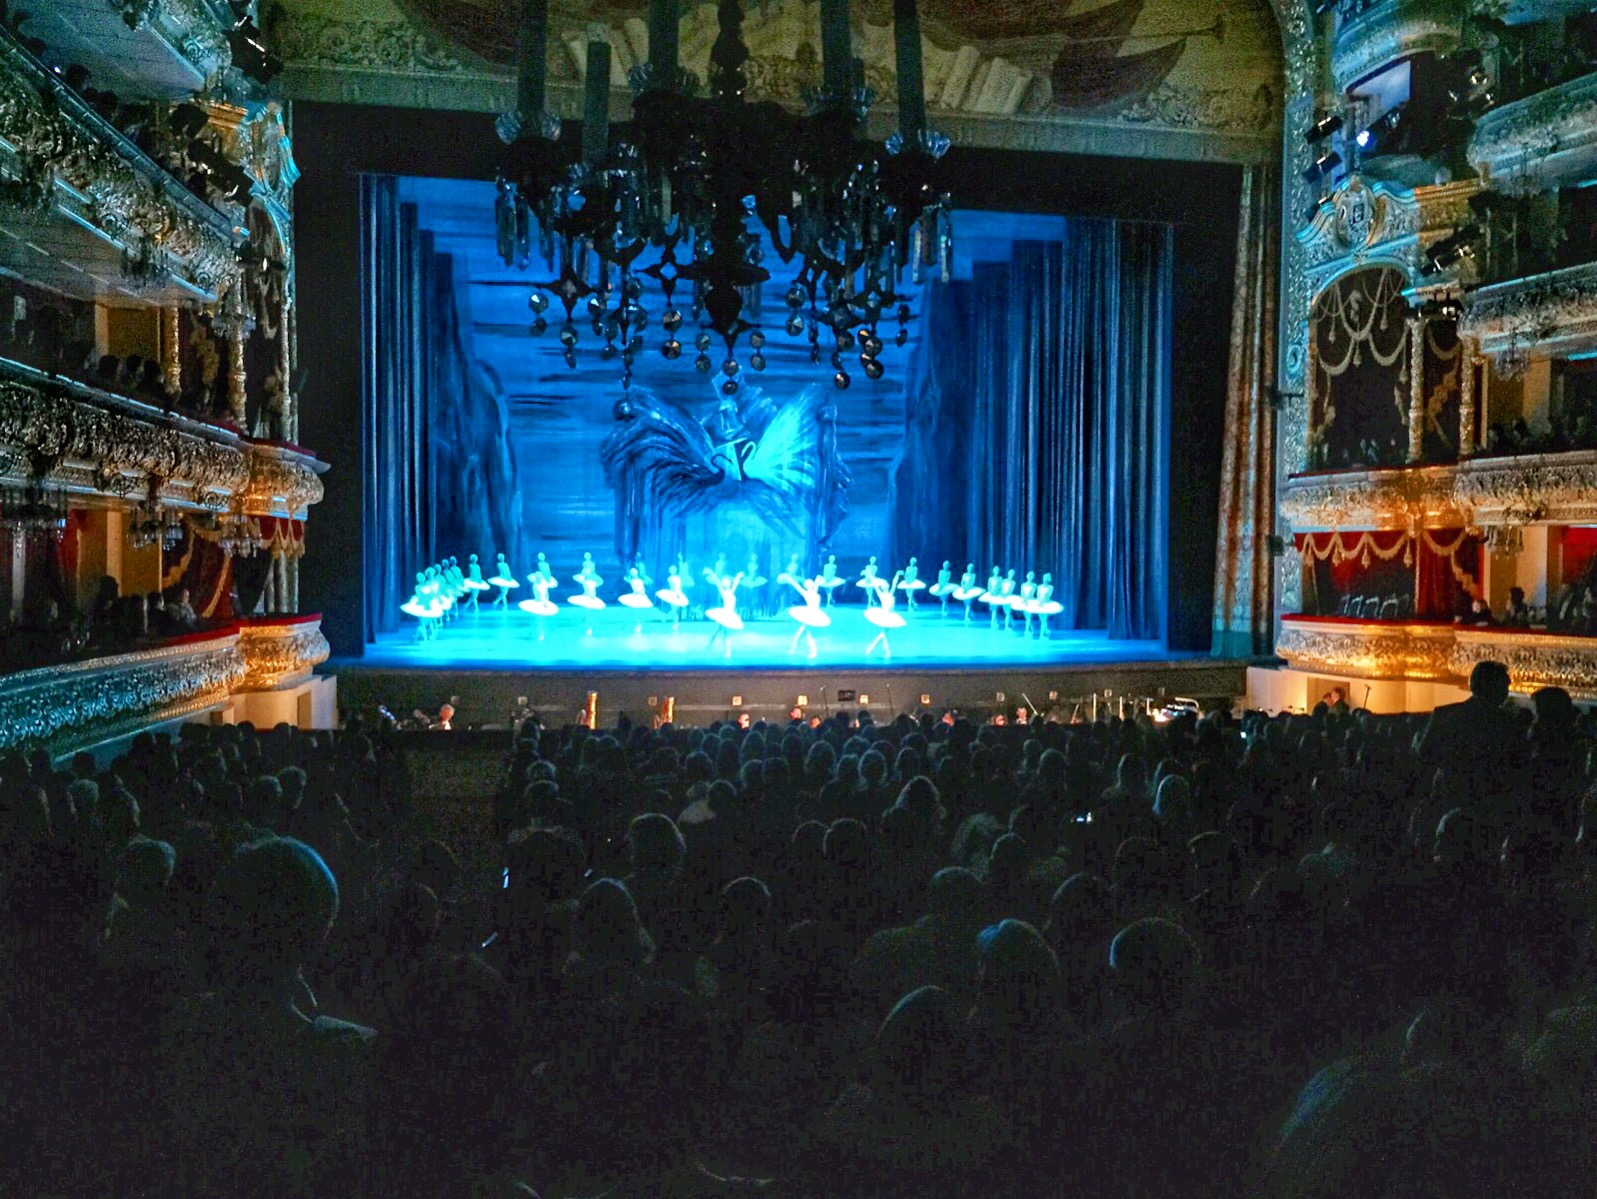 Outro grande sonho: assistir ao Ballet Lago dos Cisnes no Teatro Bolshoi de Moscou ♥